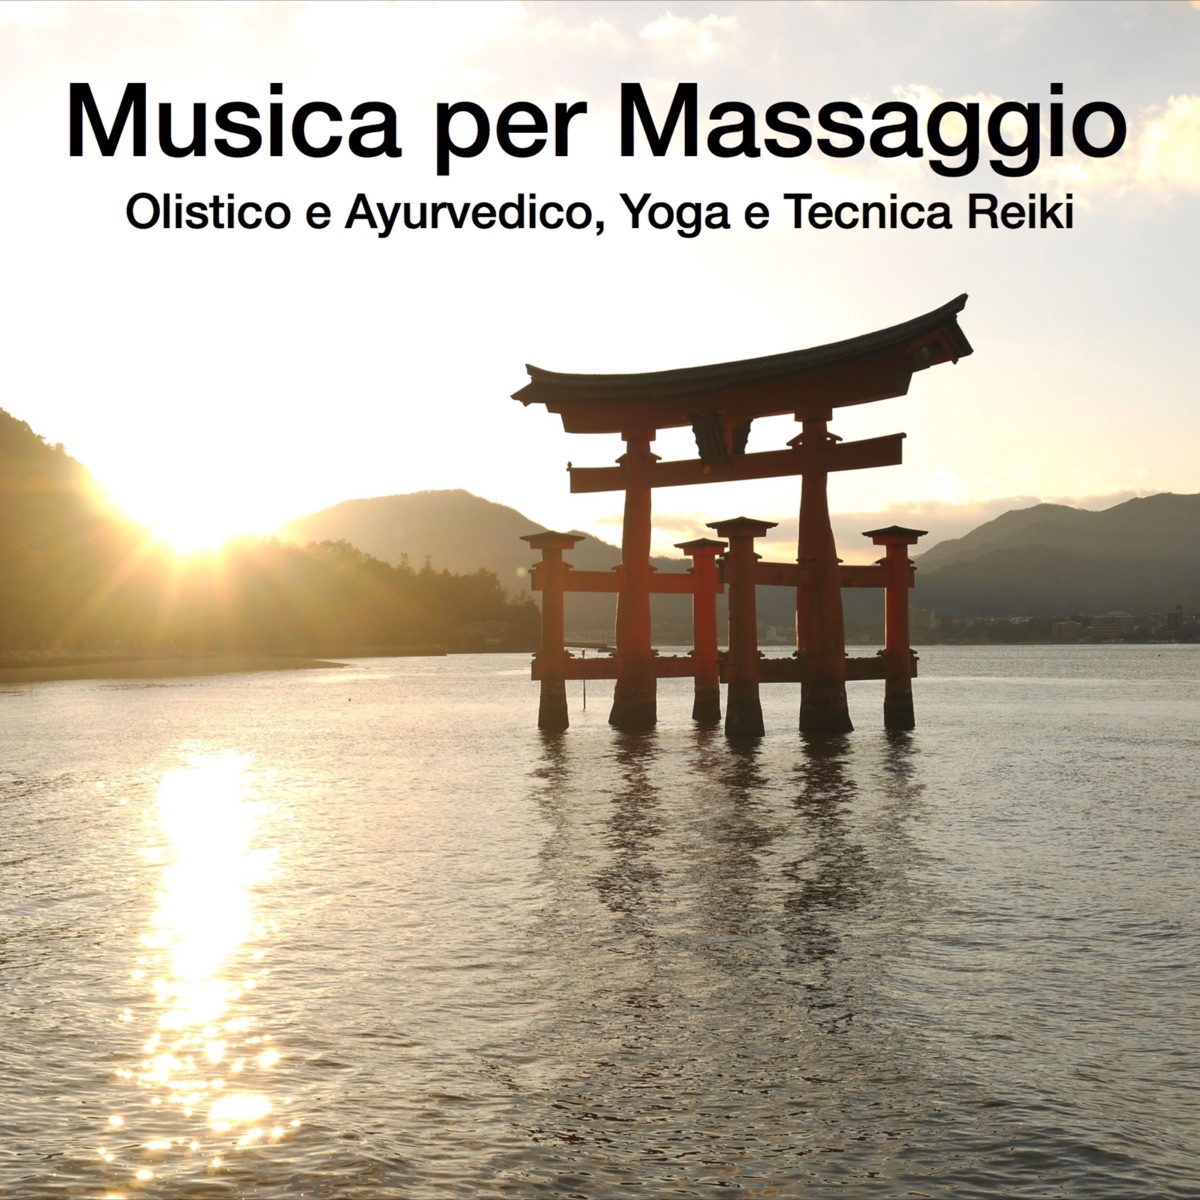 Musica per Massaggio Olistico e Ayurvedico, Yoga e Tecnica Reiki - Album di  Musica Rilassante & Benessere - Apple Music